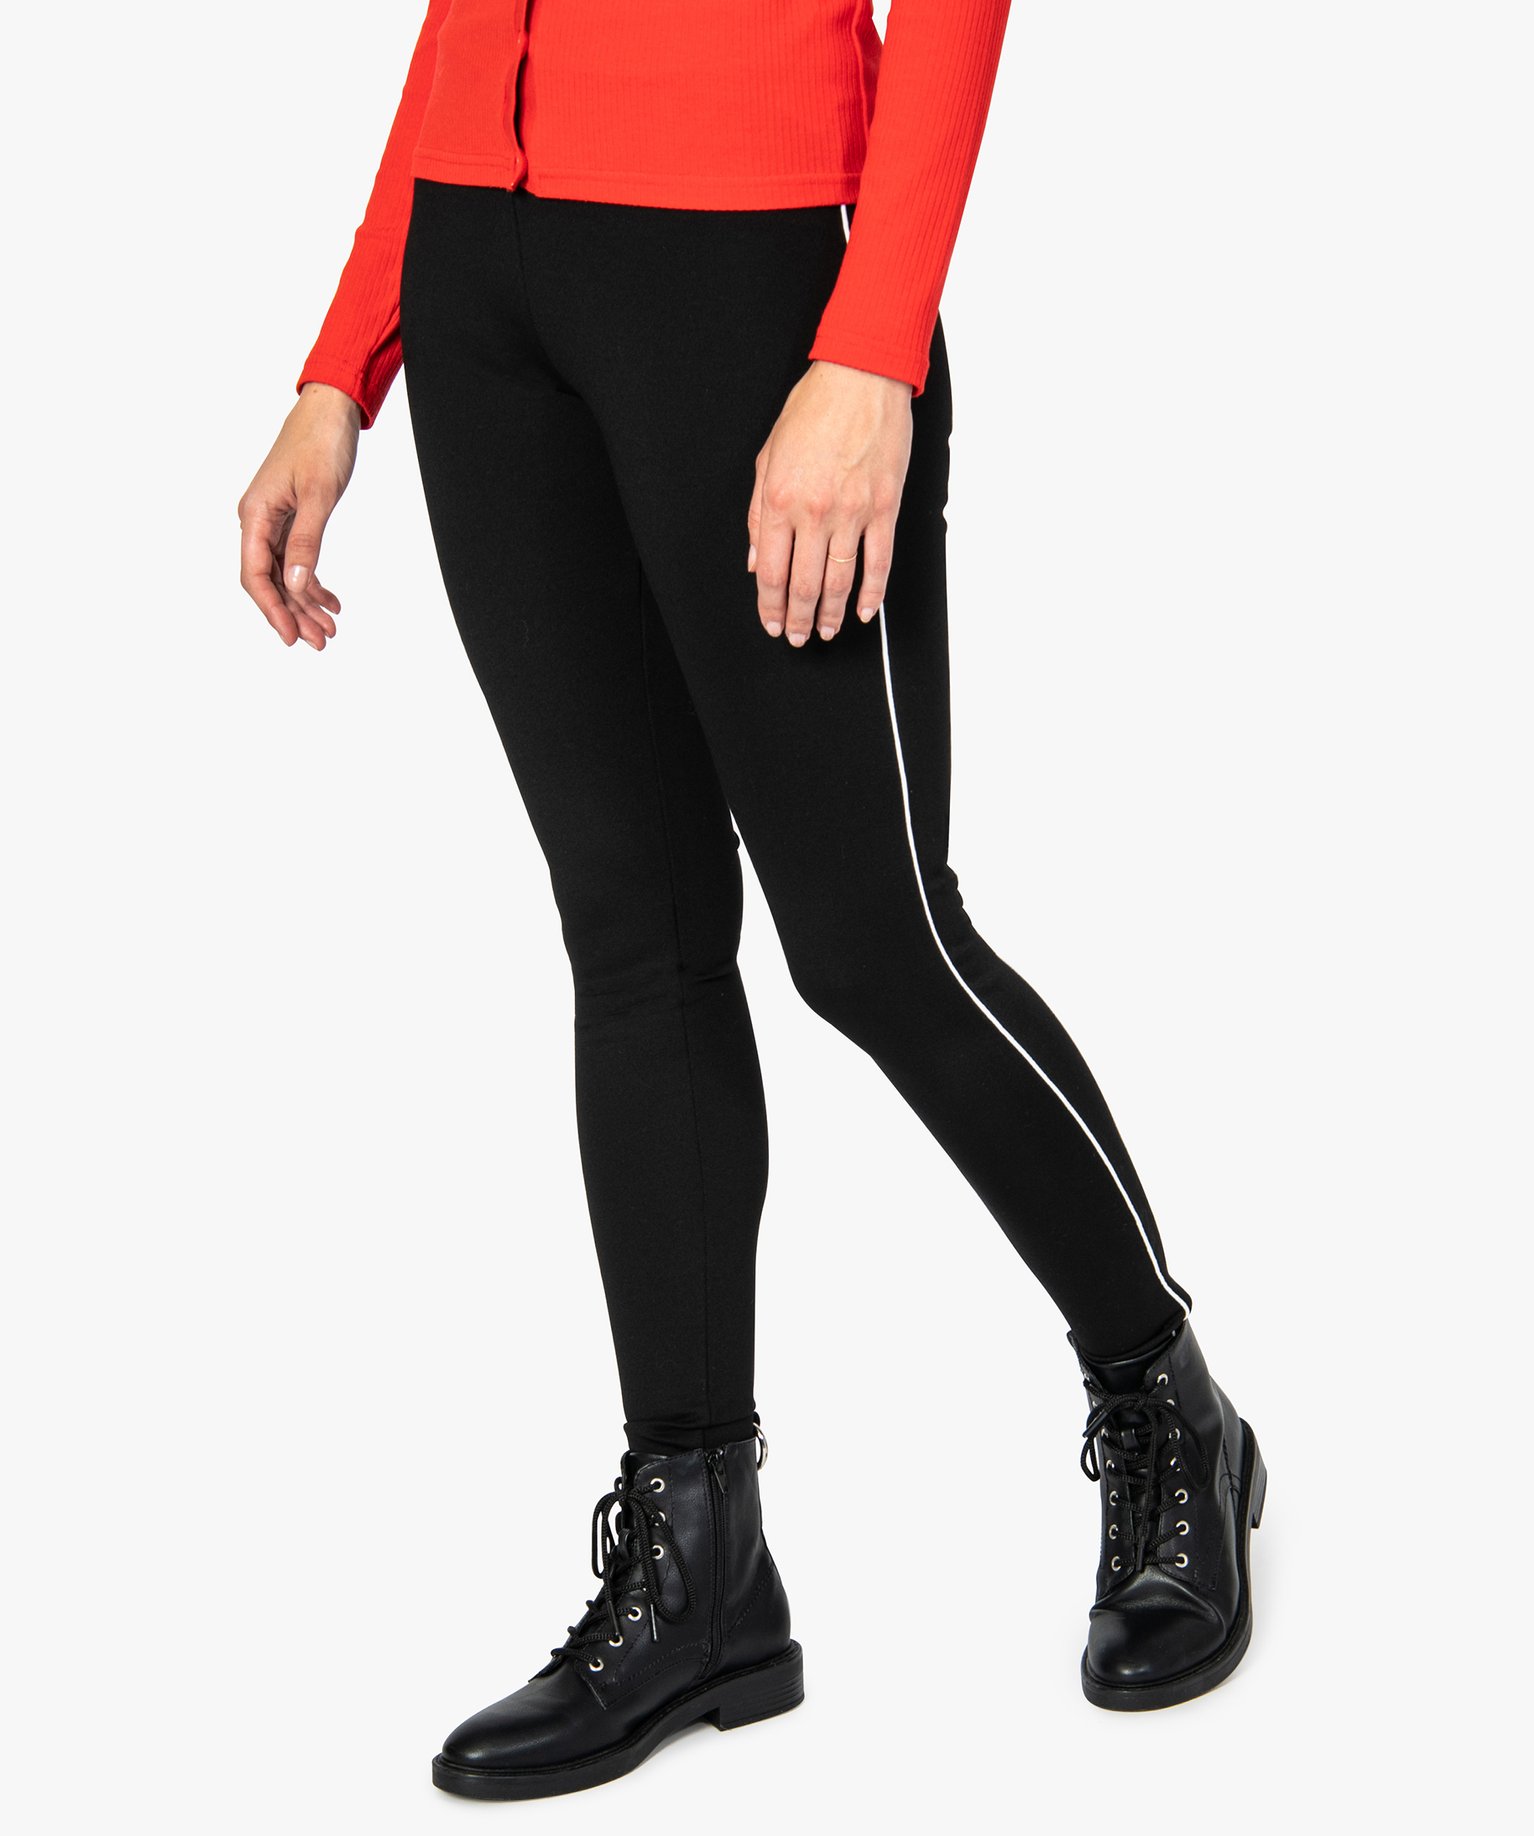 pantalon femme moulant a taille elastique et lisere contrastant noir